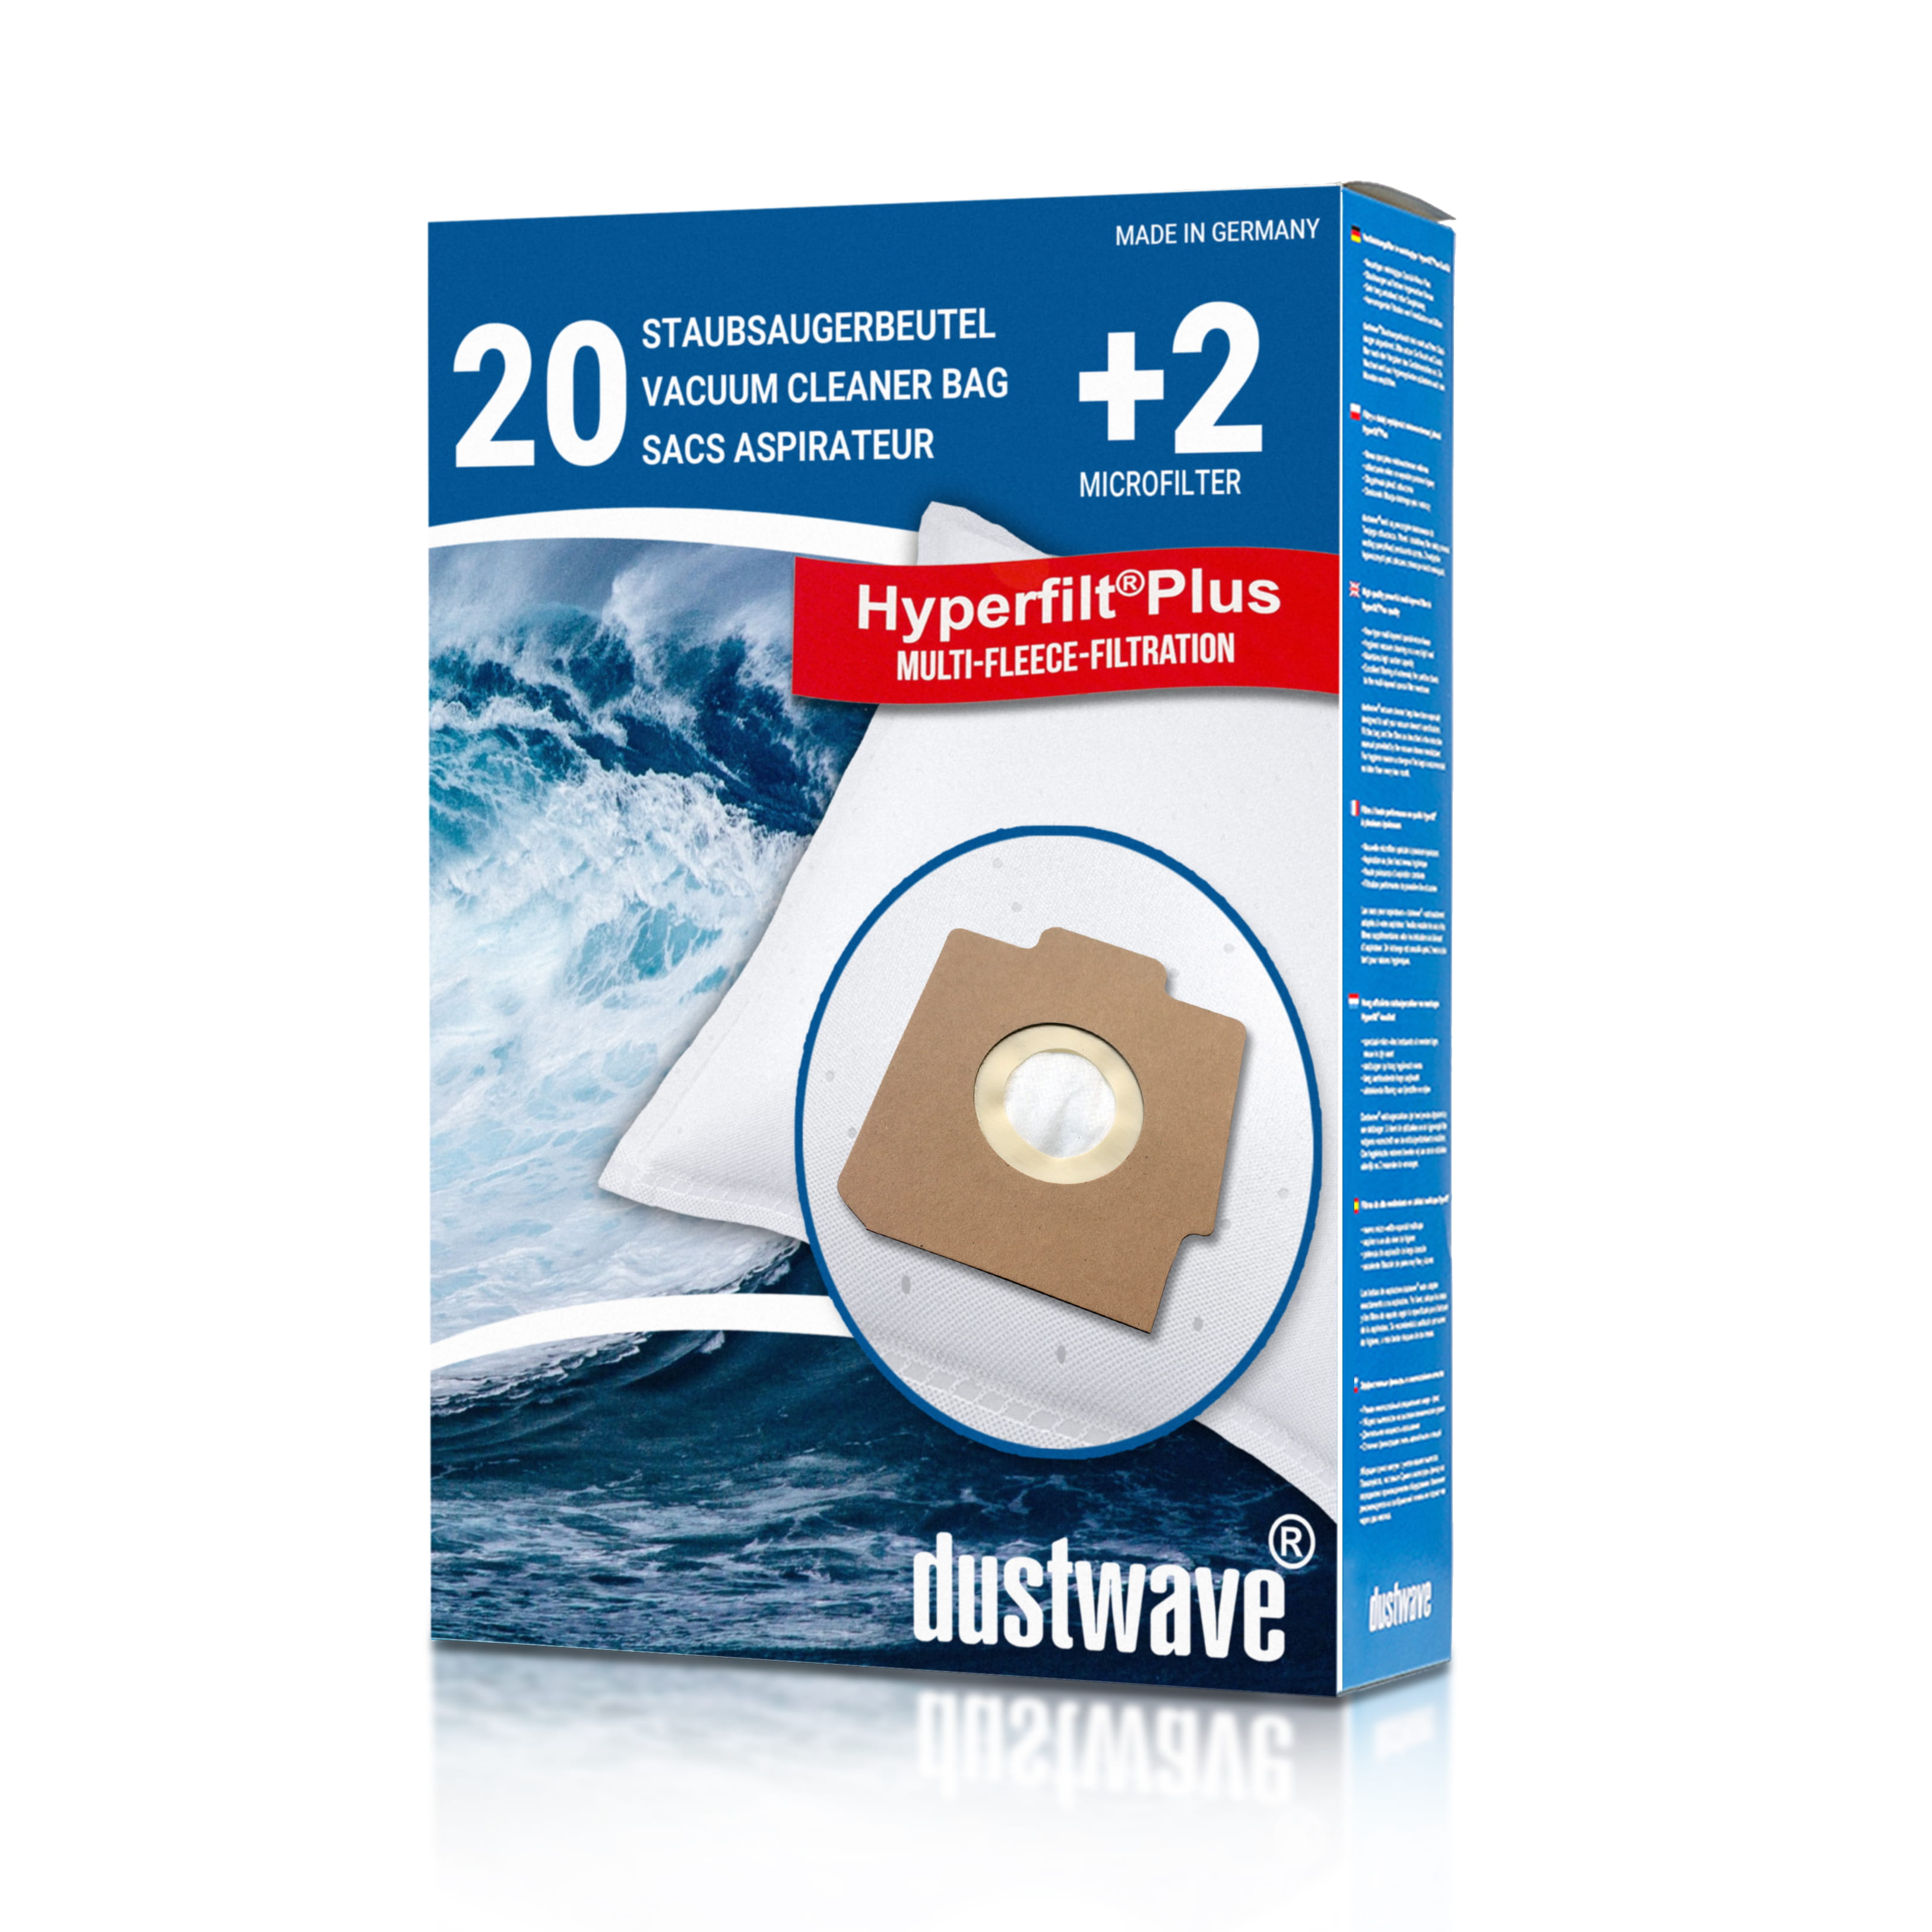 Dustwave® 20 Staubsaugerbeutel für Hoover S3722 / TRS3722 - hocheffizient, mehrlagiges Mikrovlies mit Hygieneverschluss - Made in Germany